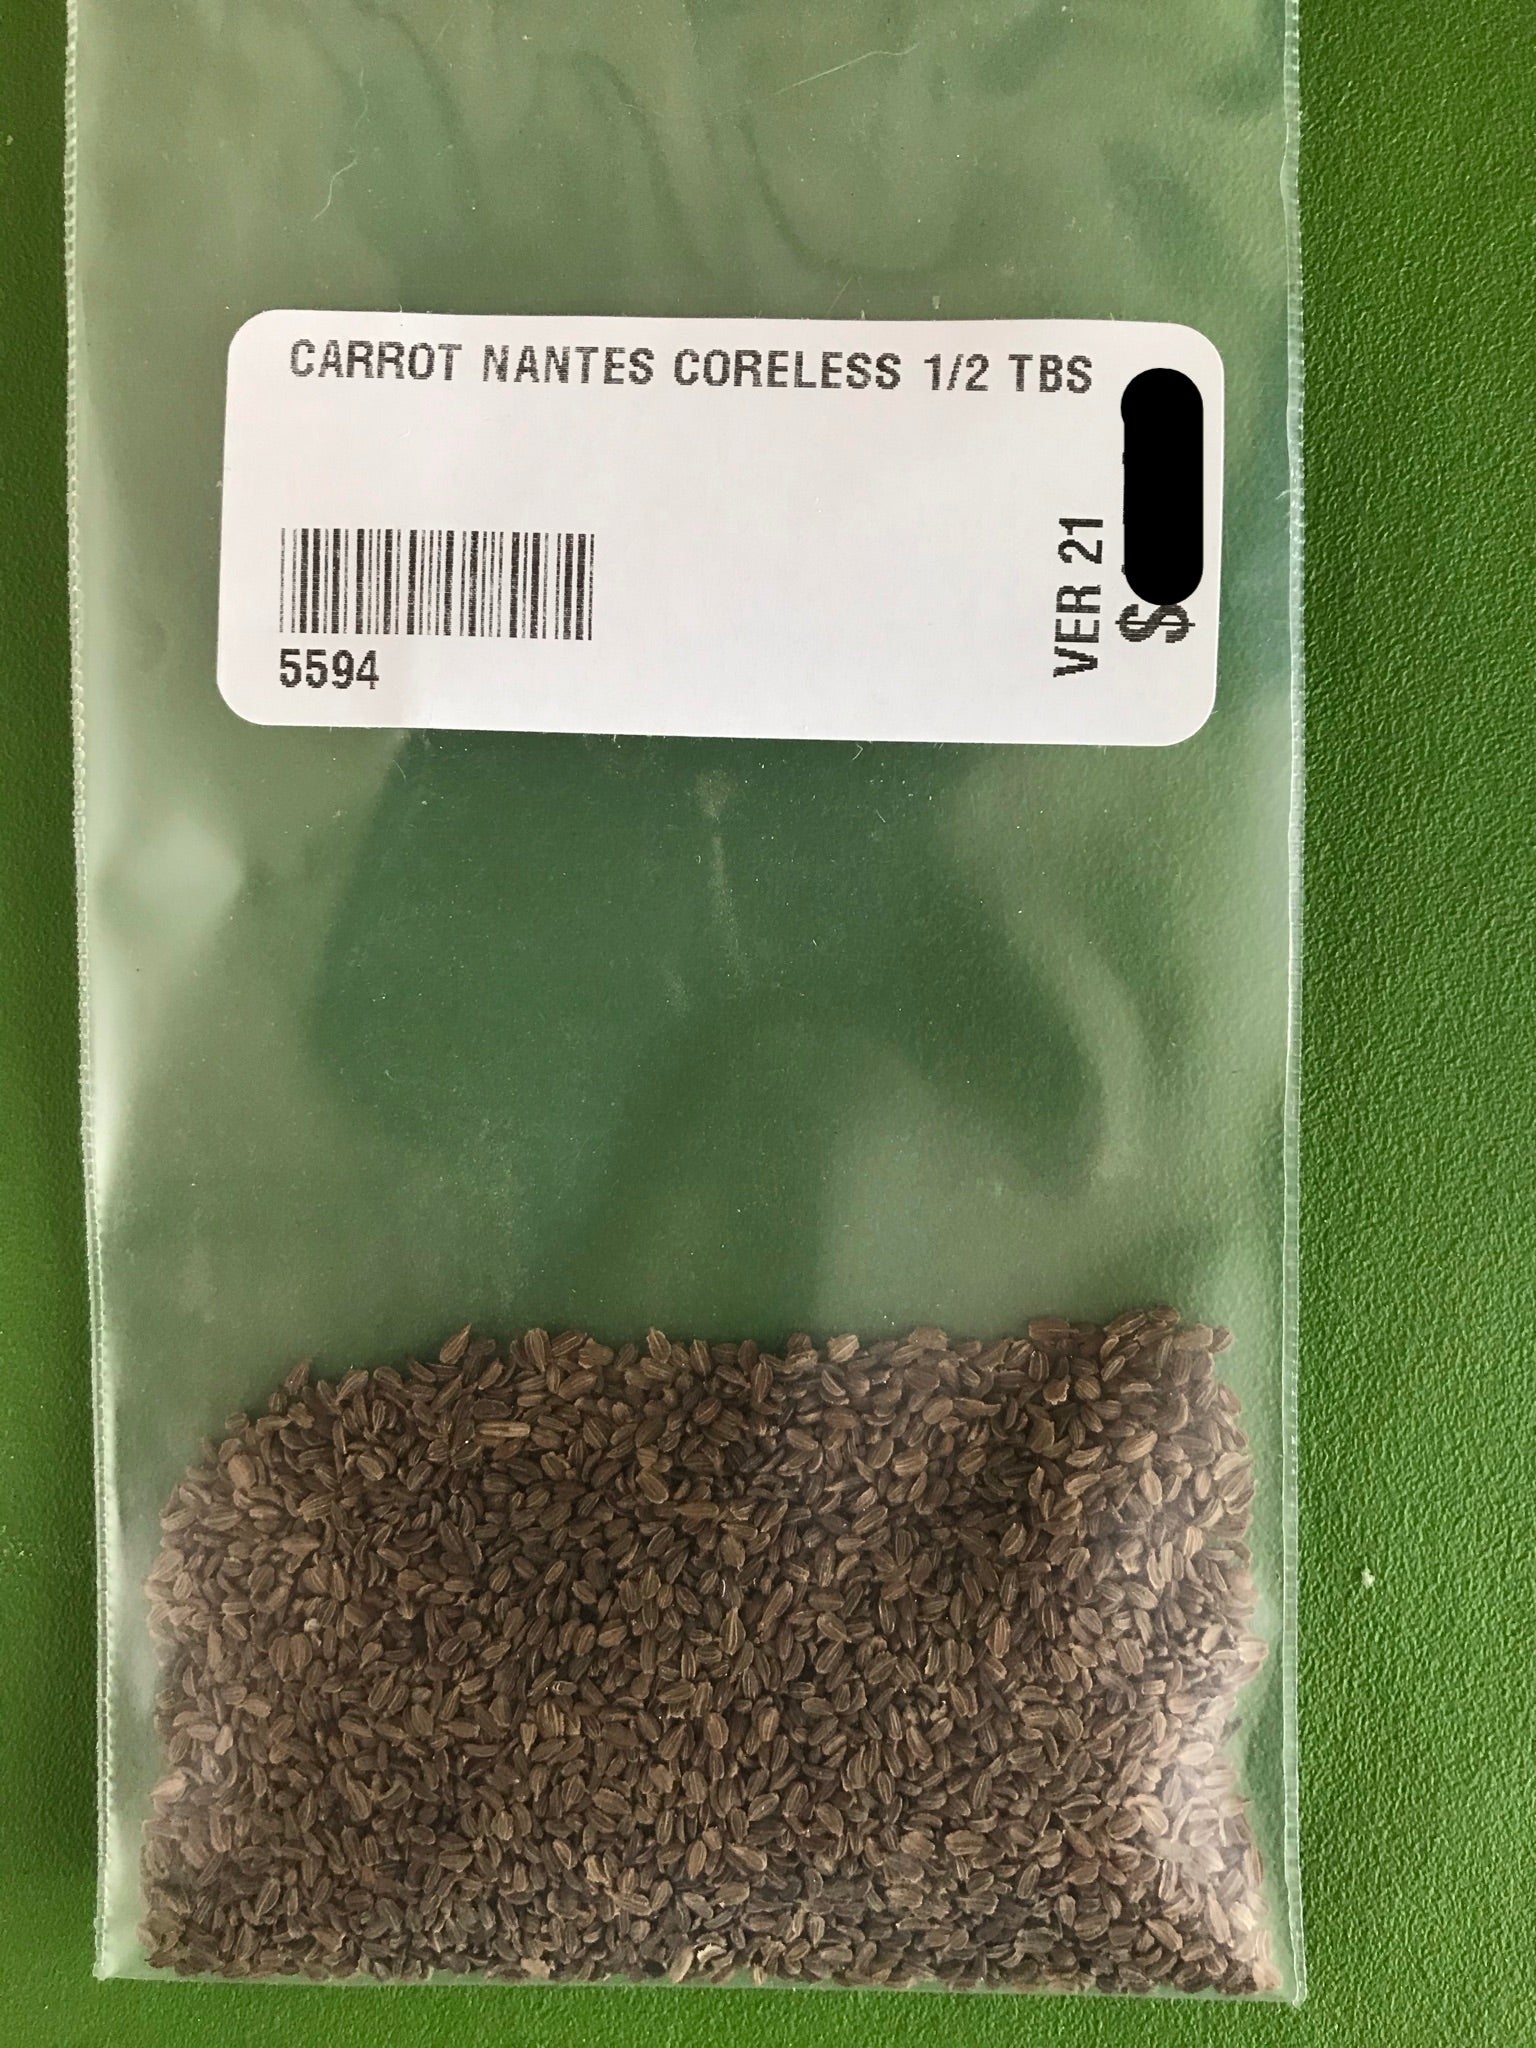 Nantes Coreless Carrot Seeds (70 days) - 1/2 tbsp - Bulk